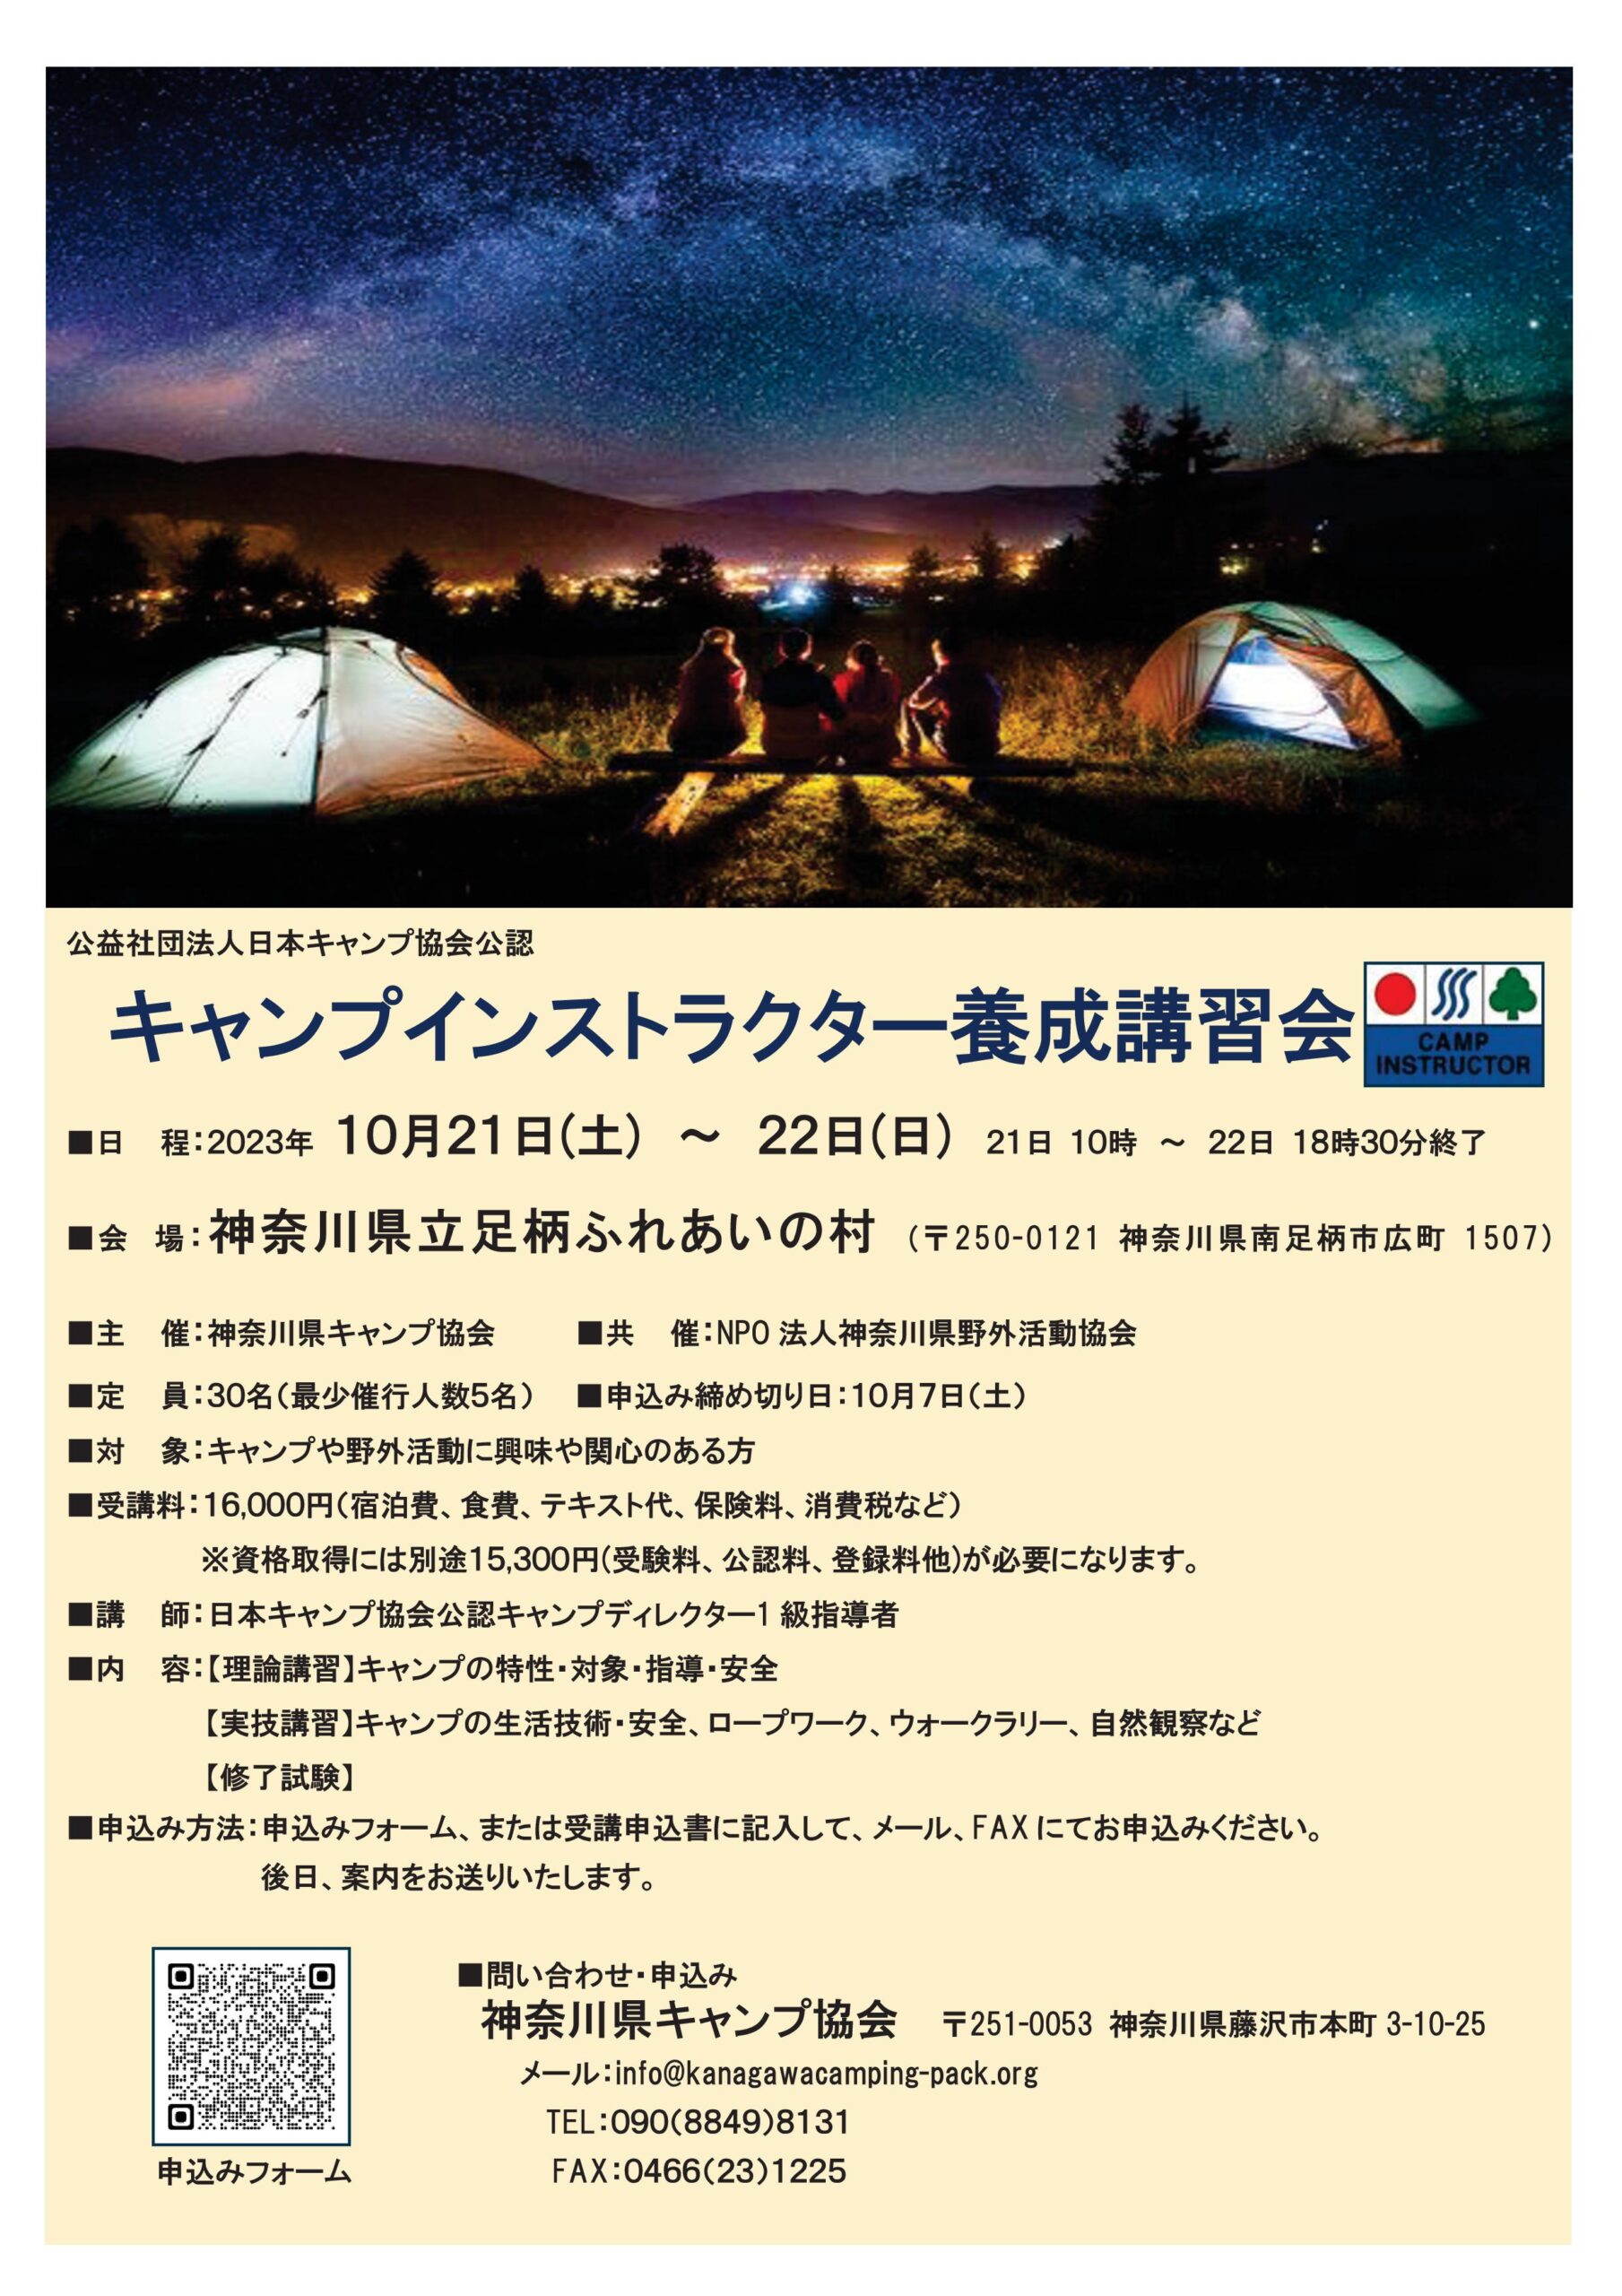 神奈川：キャンプインストラクター講習会 @ 神奈川 県 立 足柄ふれあいの村